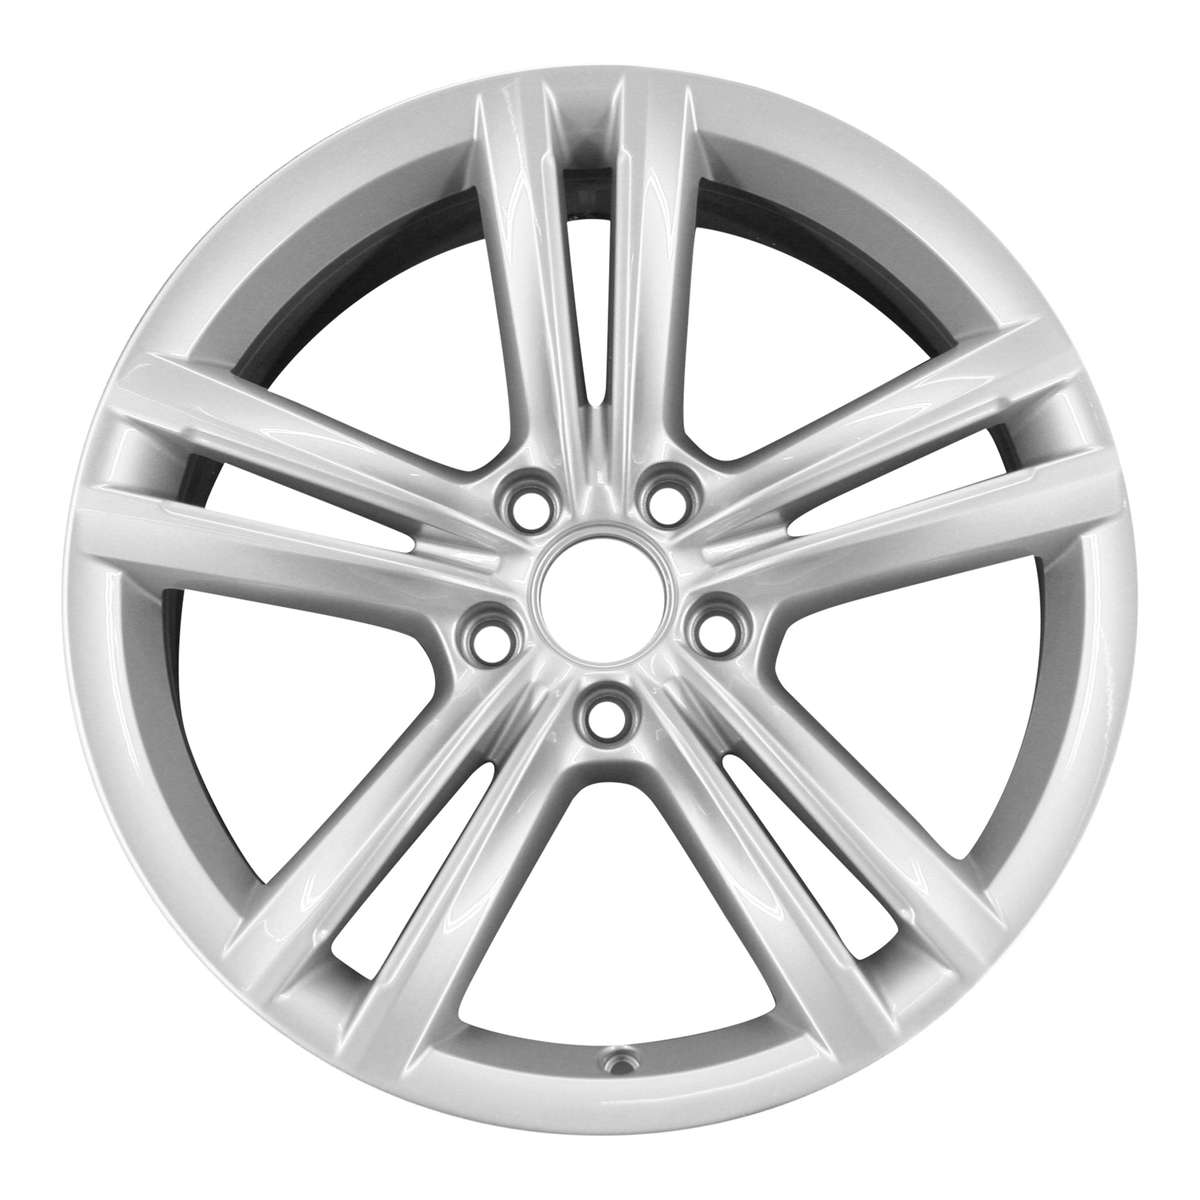 2013 Volkswagen Passat 18" OEM Wheel Rim Bristol W69929S